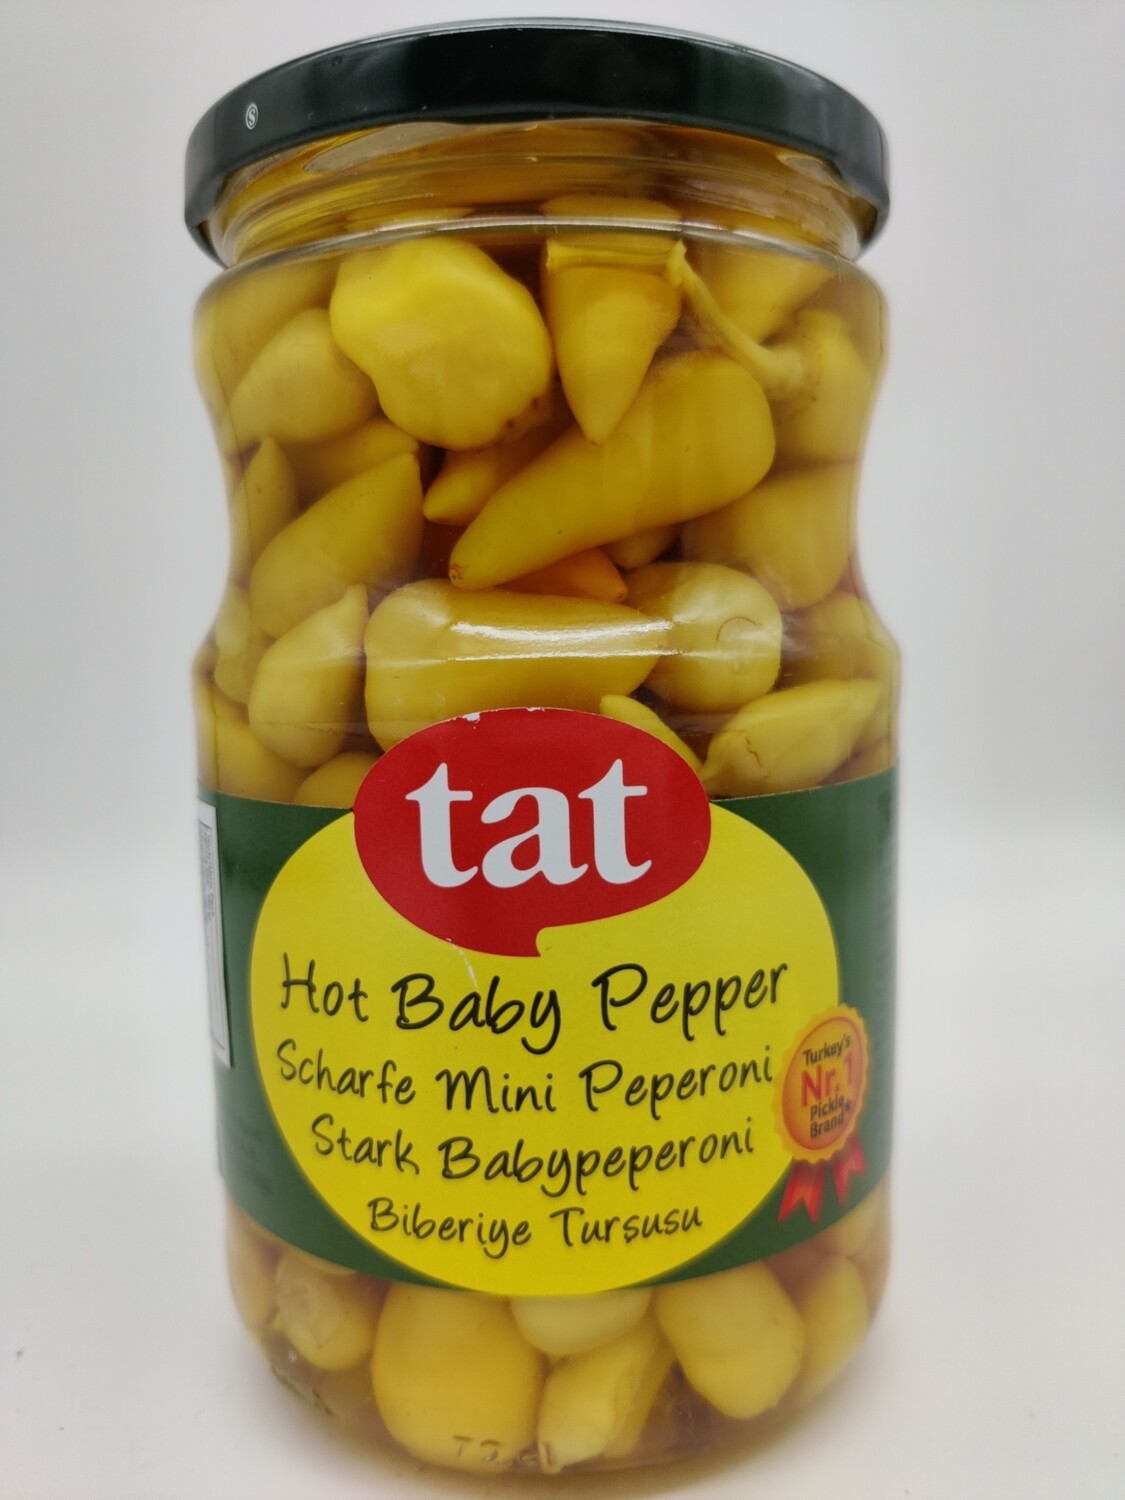 TAT Hot Pickled Baby Pepper Biberiye Tursusu Isot 720cc